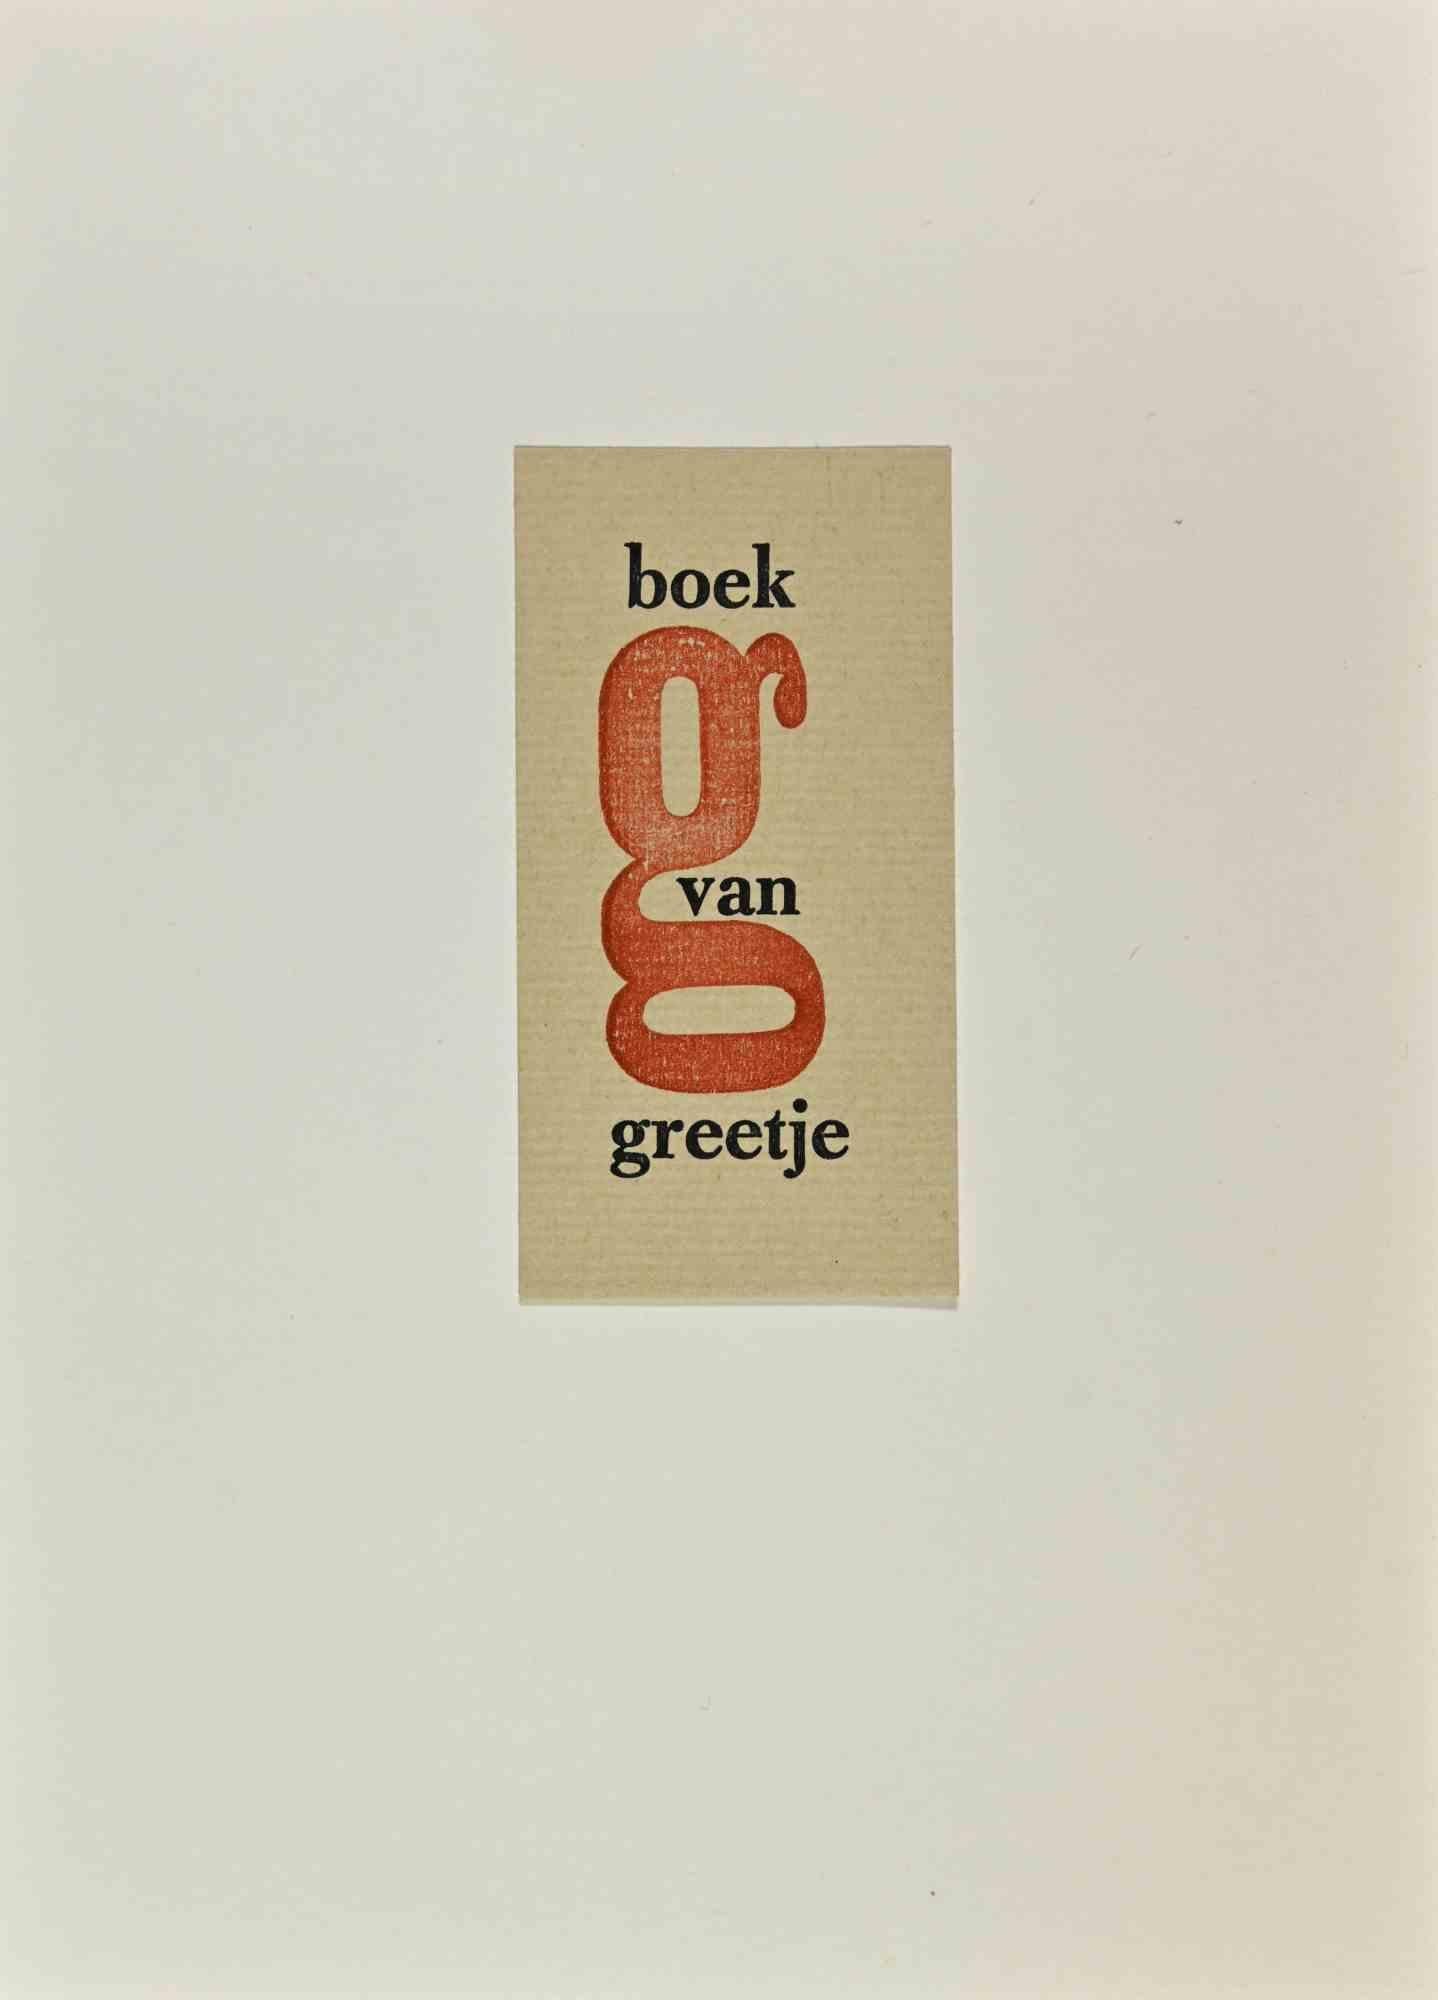   Ex Libris - Boek van Greetje - Woodcut - Mid-20th Century - Art by Unknown